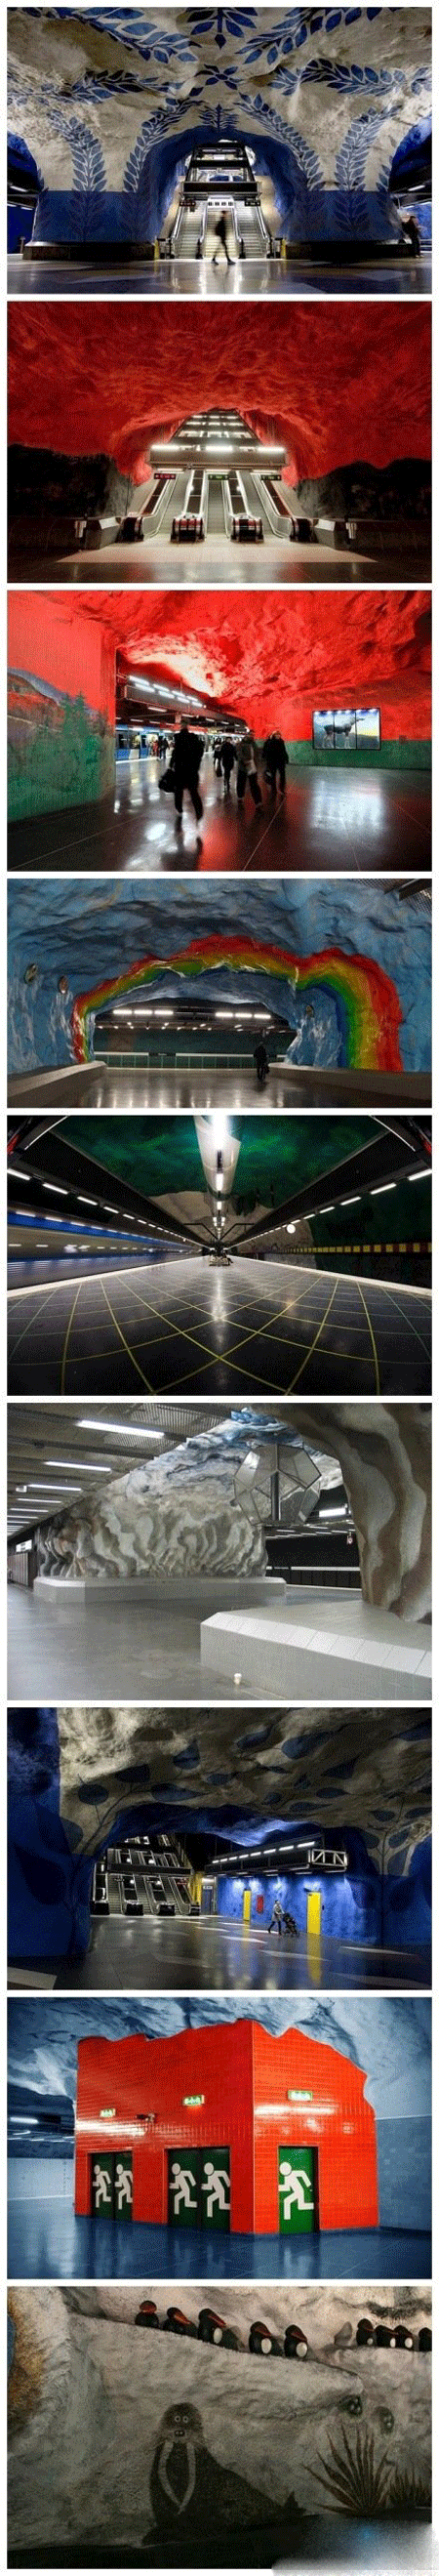 斯德哥尔摩的地铁,被誉为世界上最长的地下艺术长廊